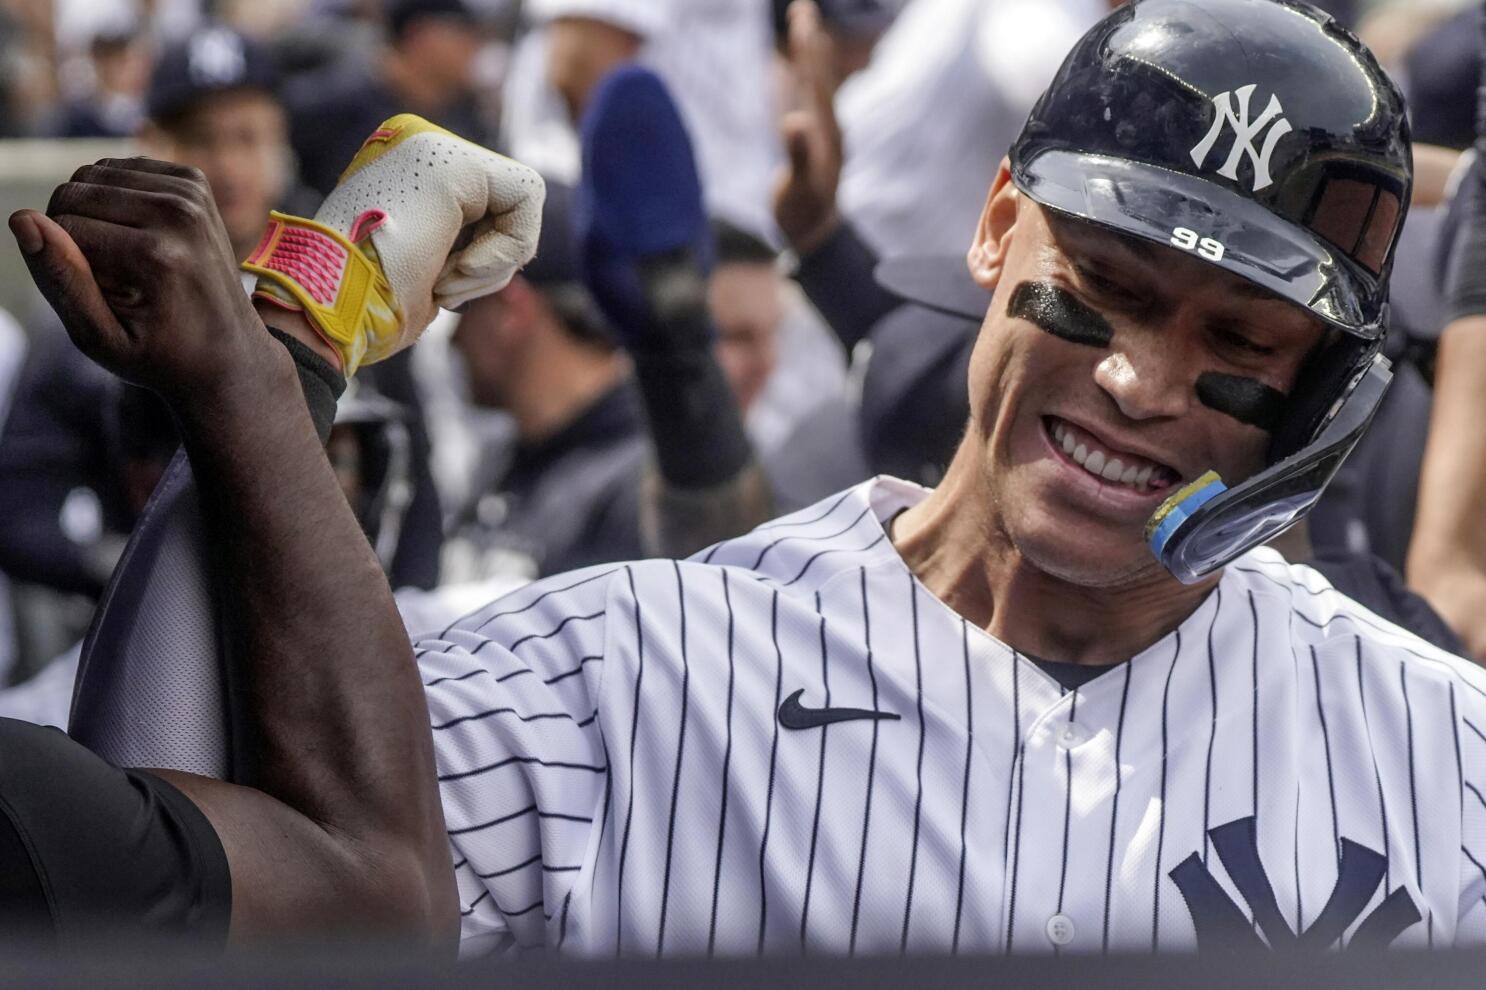 Yankees' Aaron Judge on wearing 99, not his favorite number 